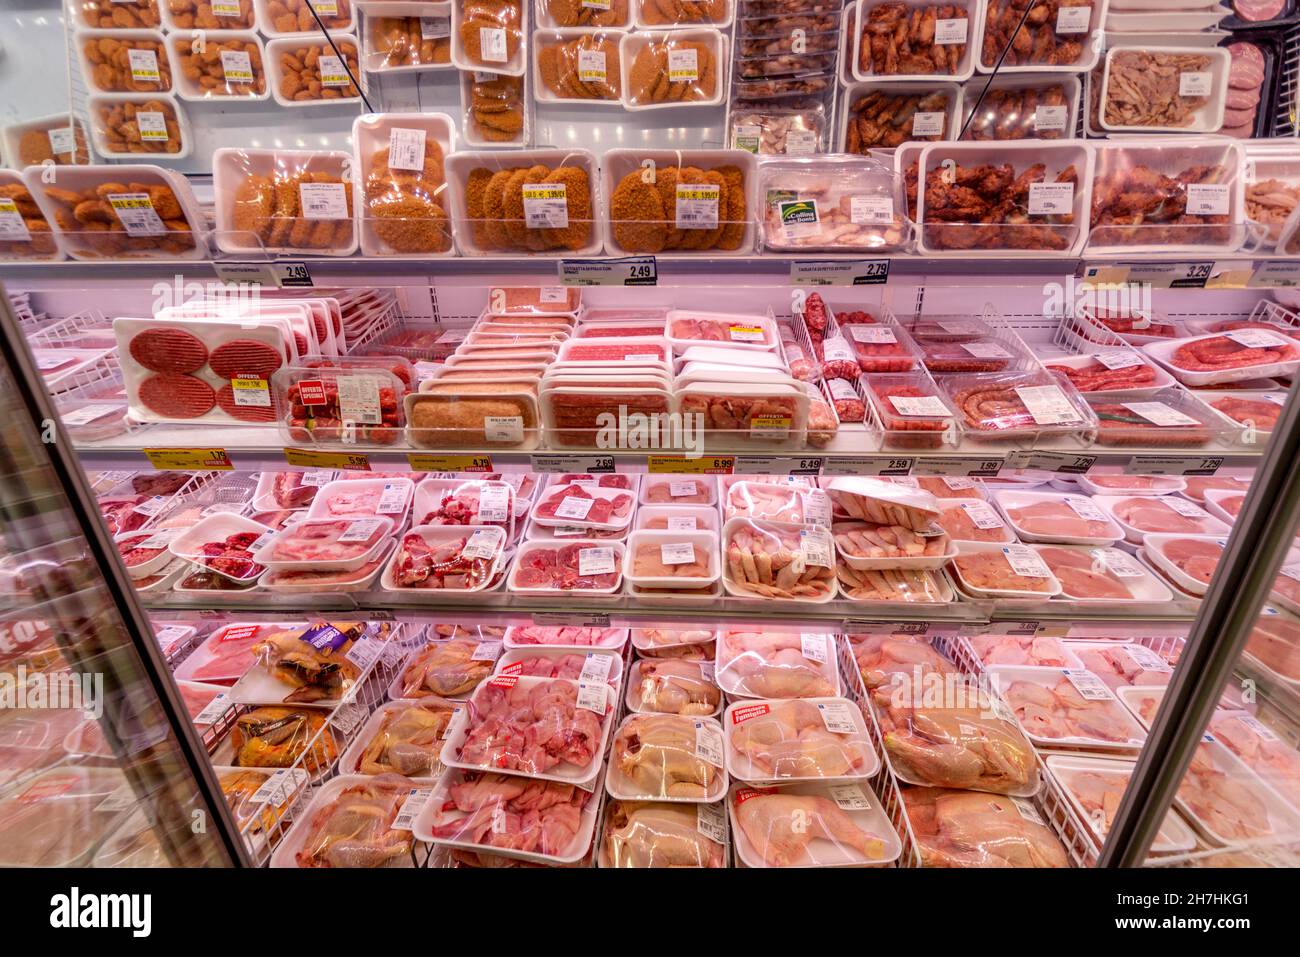 Fossano, Italia - 24 de octubre de 2021: descripción general sobre el compartimento frigorífico de la carne envasada de diferentes tipos en el supermercado italiano Foto de stock